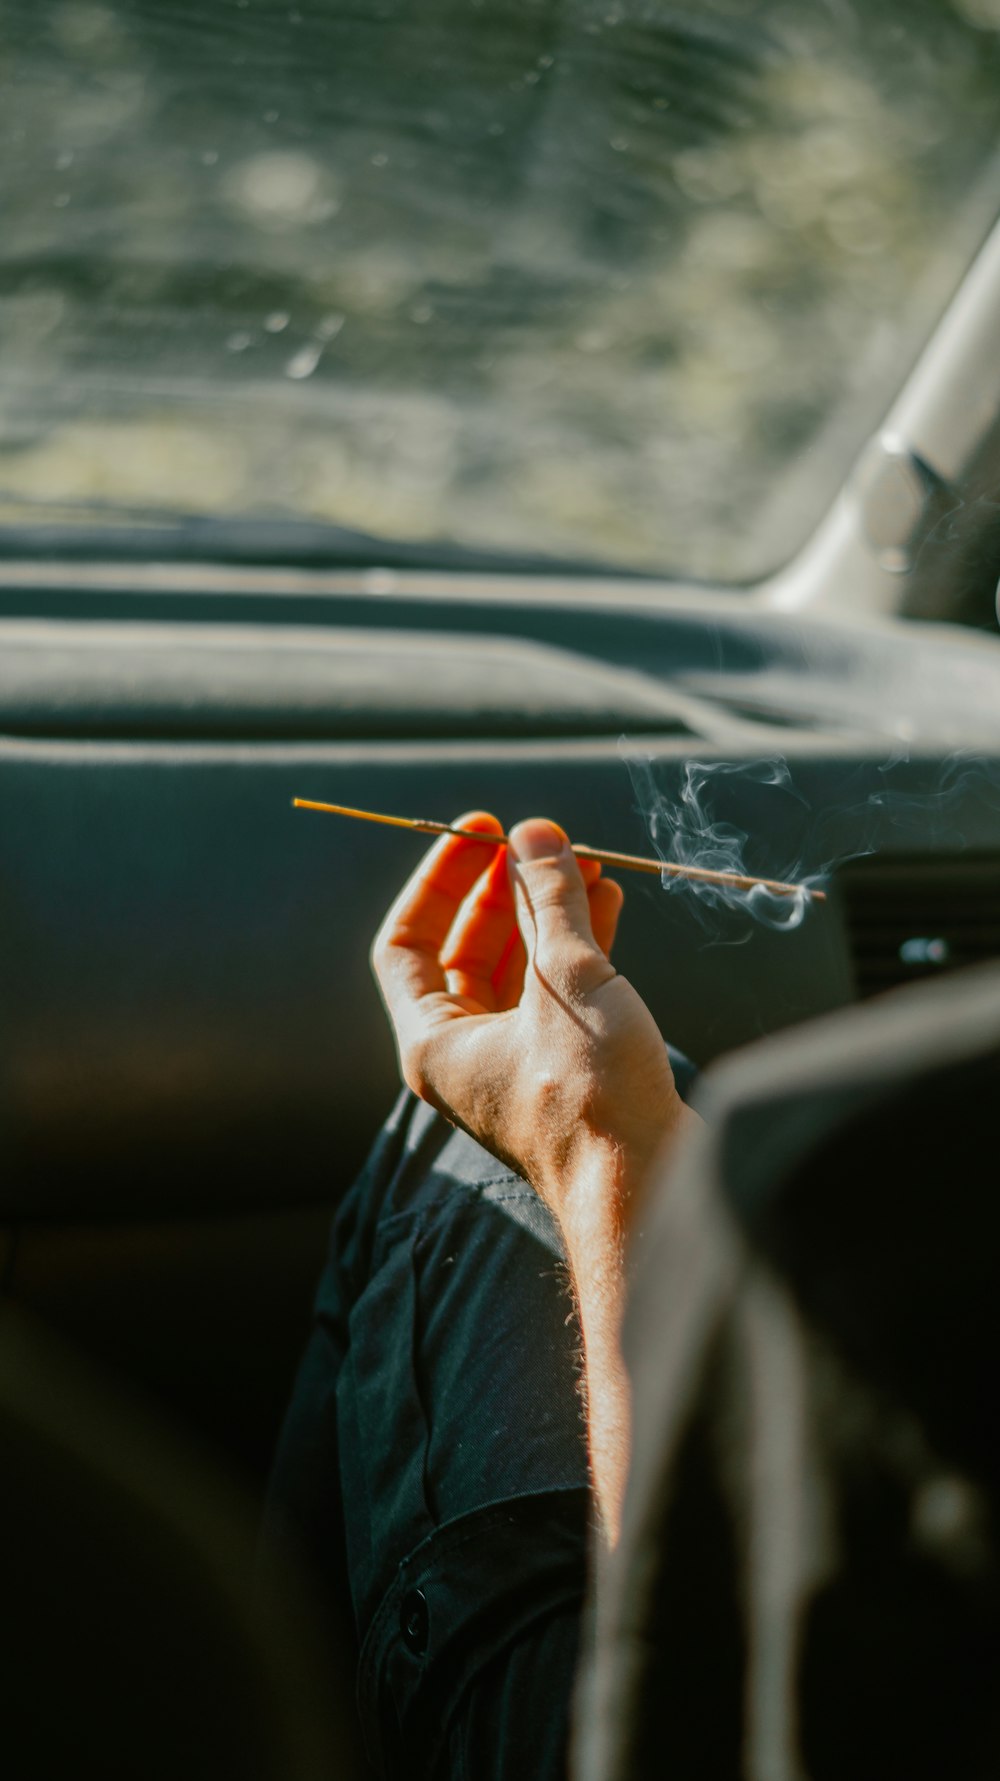 person holding cigarette stick in car